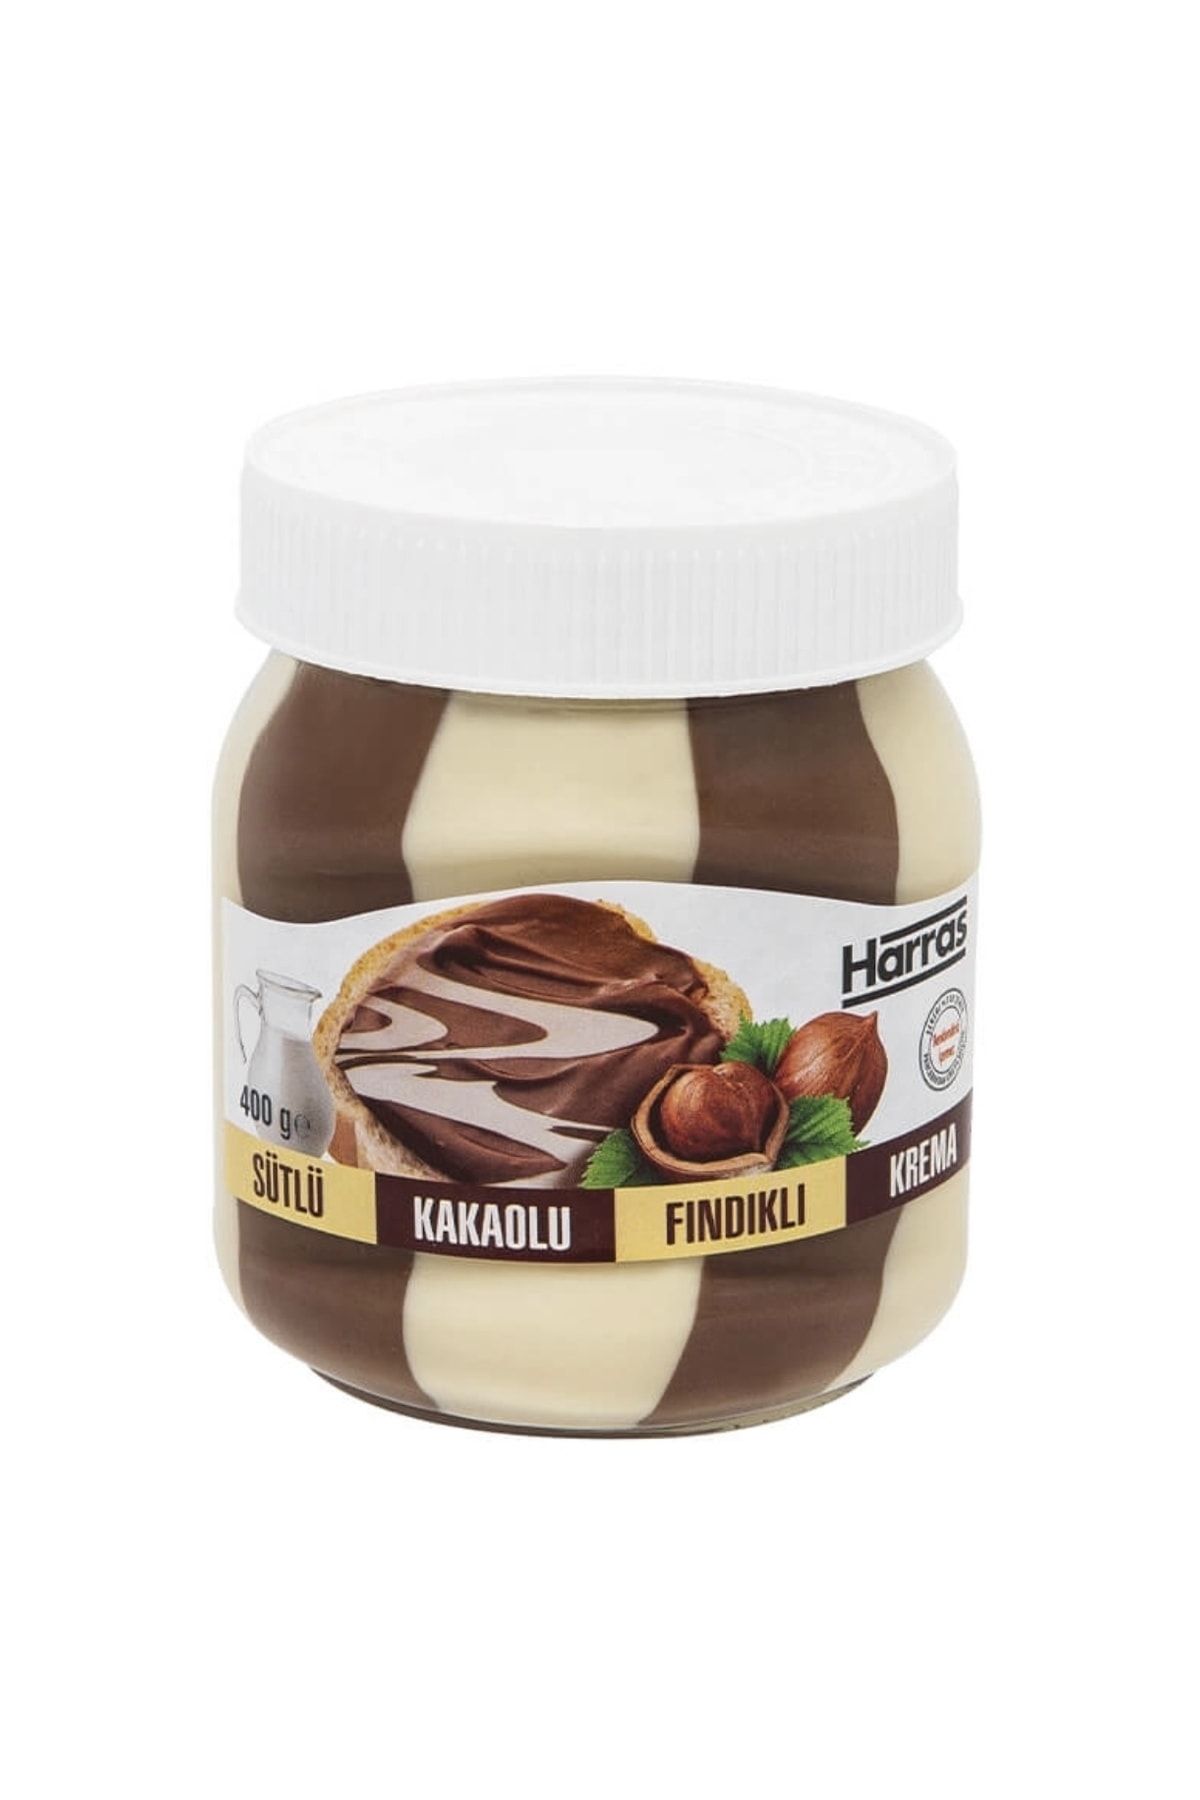 Harras Duo Sütlü Kakaolu Fındıklı Krema 400 gr